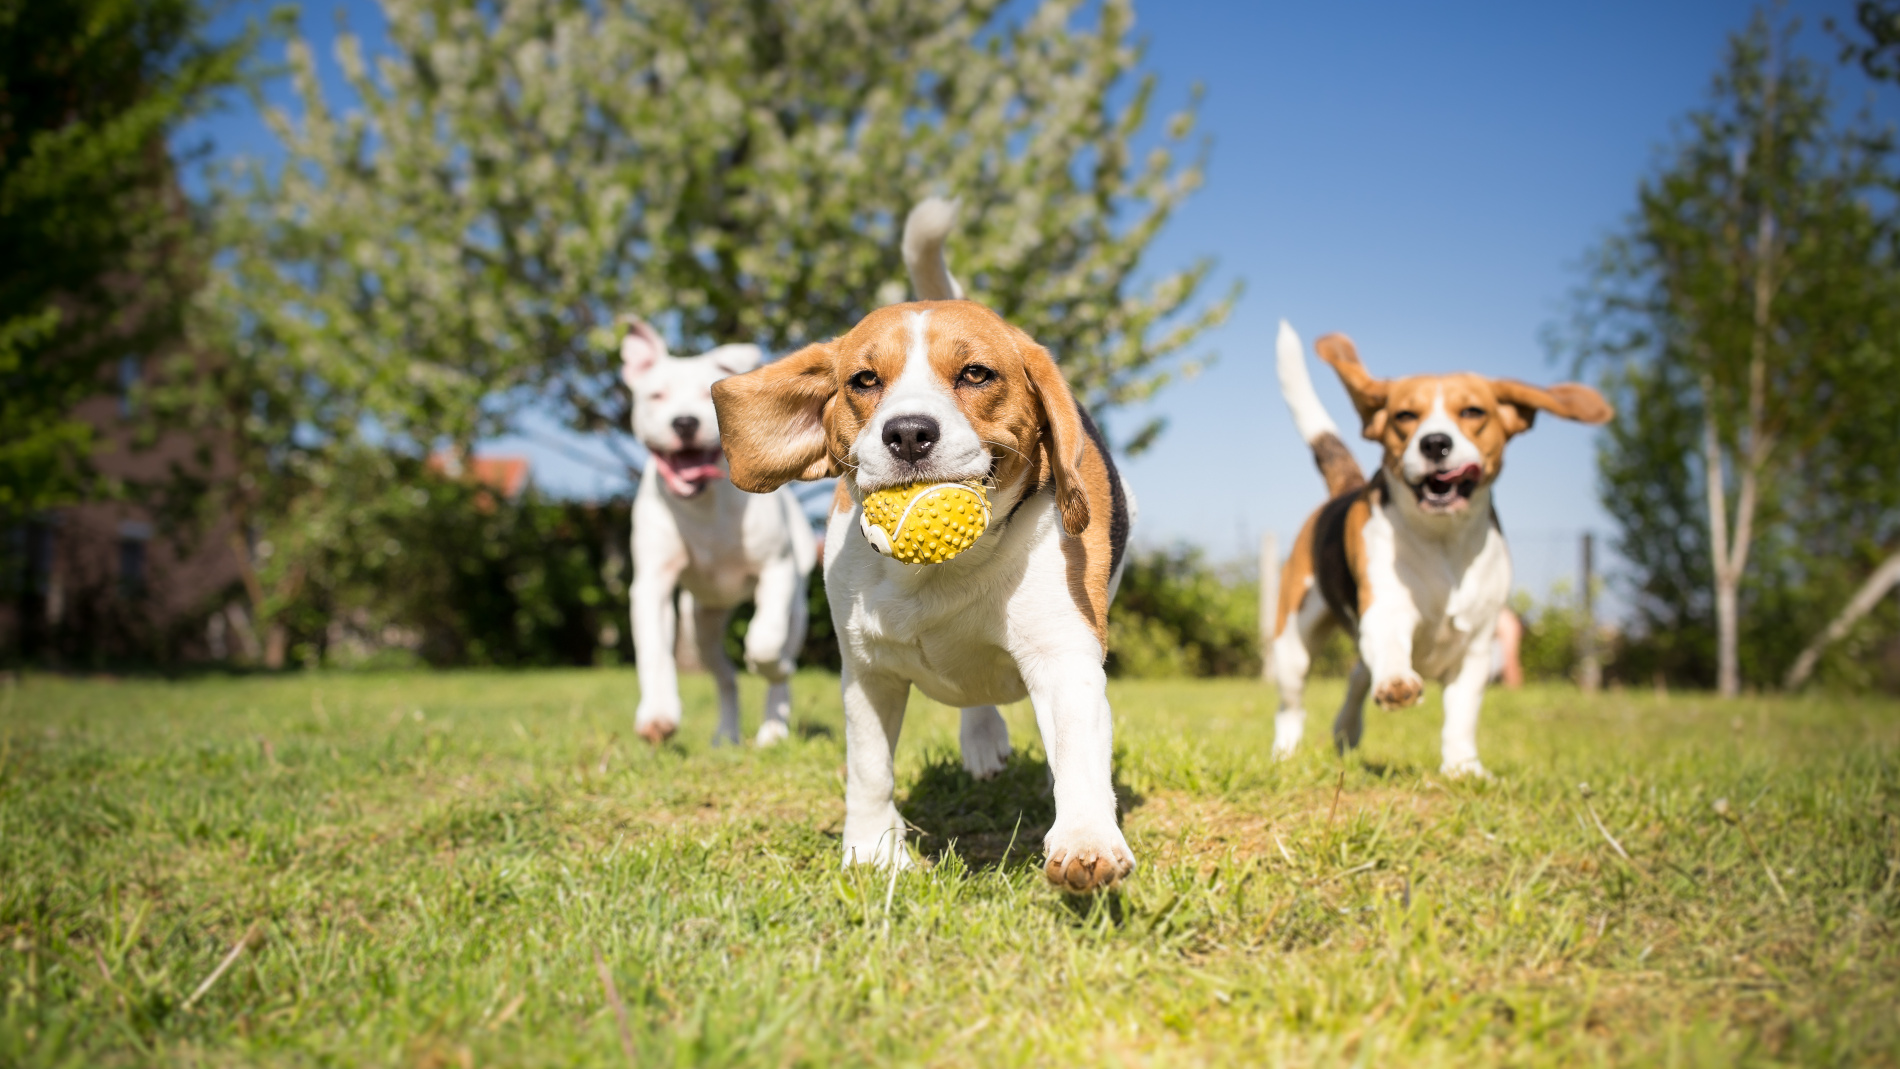 Três cães correm num parque na direção da câmara. O cão no centro tem um brinquedo na boca.